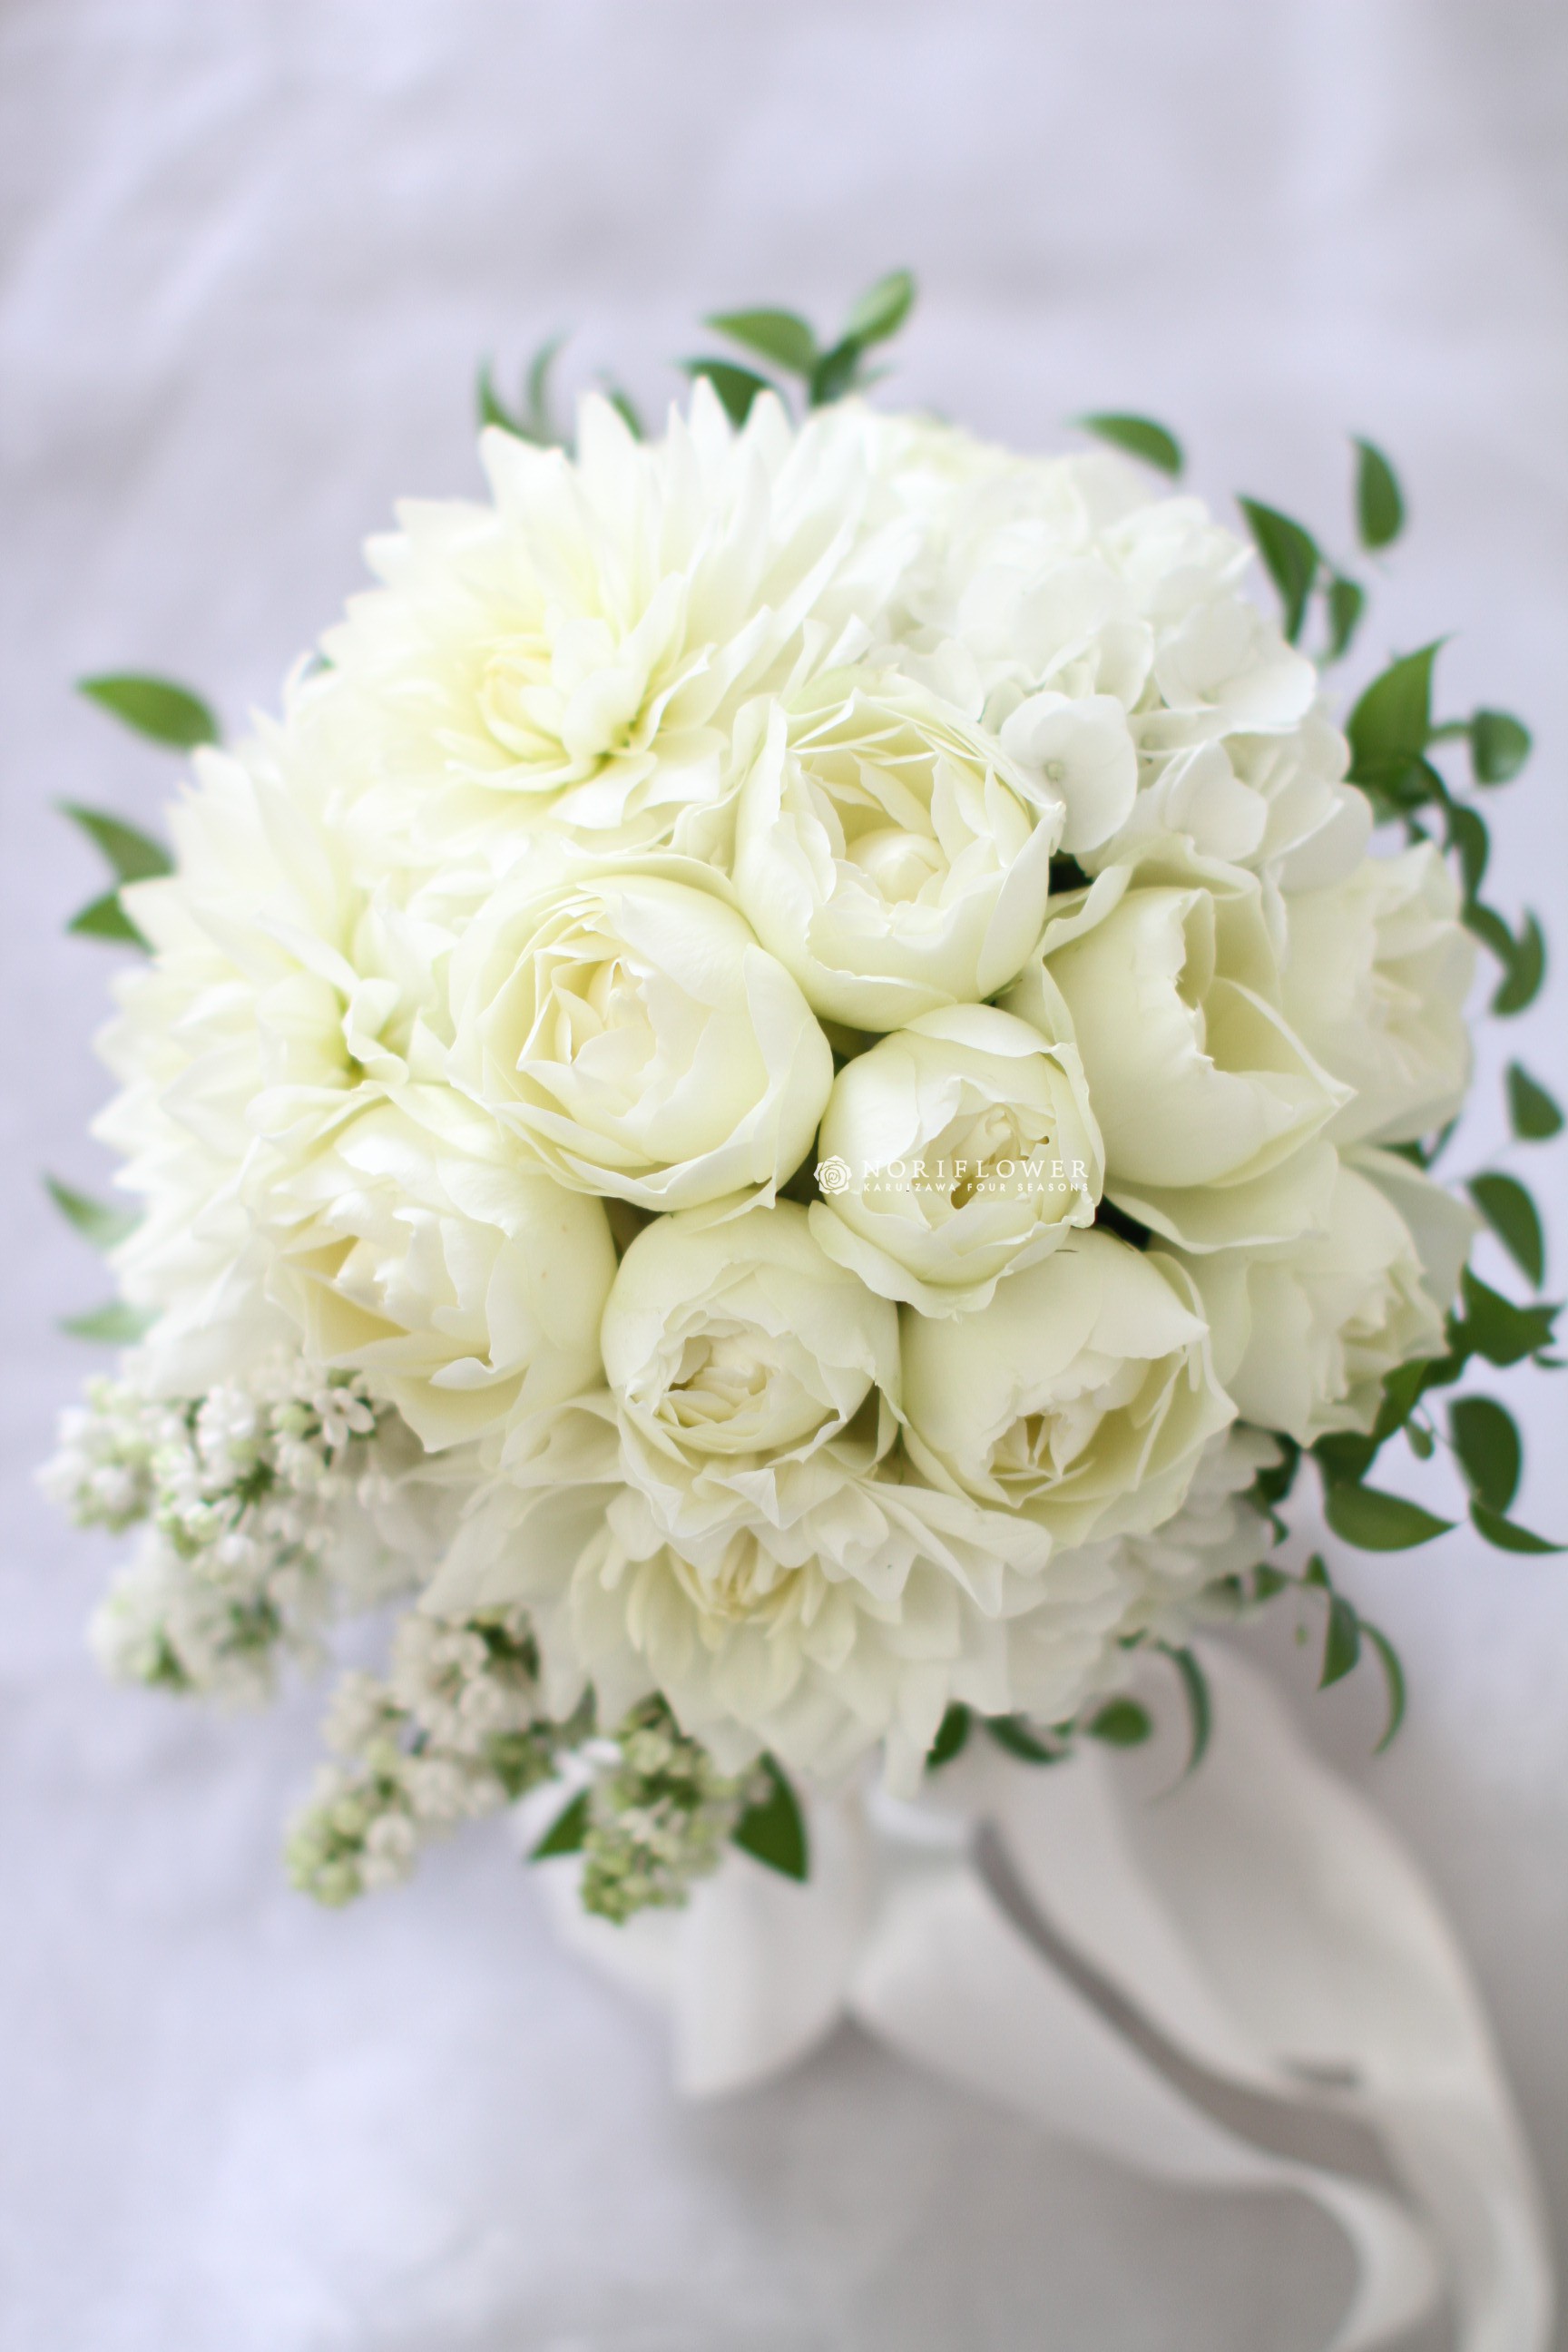 すべての美しい花の画像 最高かつ最も包括的な結婚式 ブーケ 花屋 値段